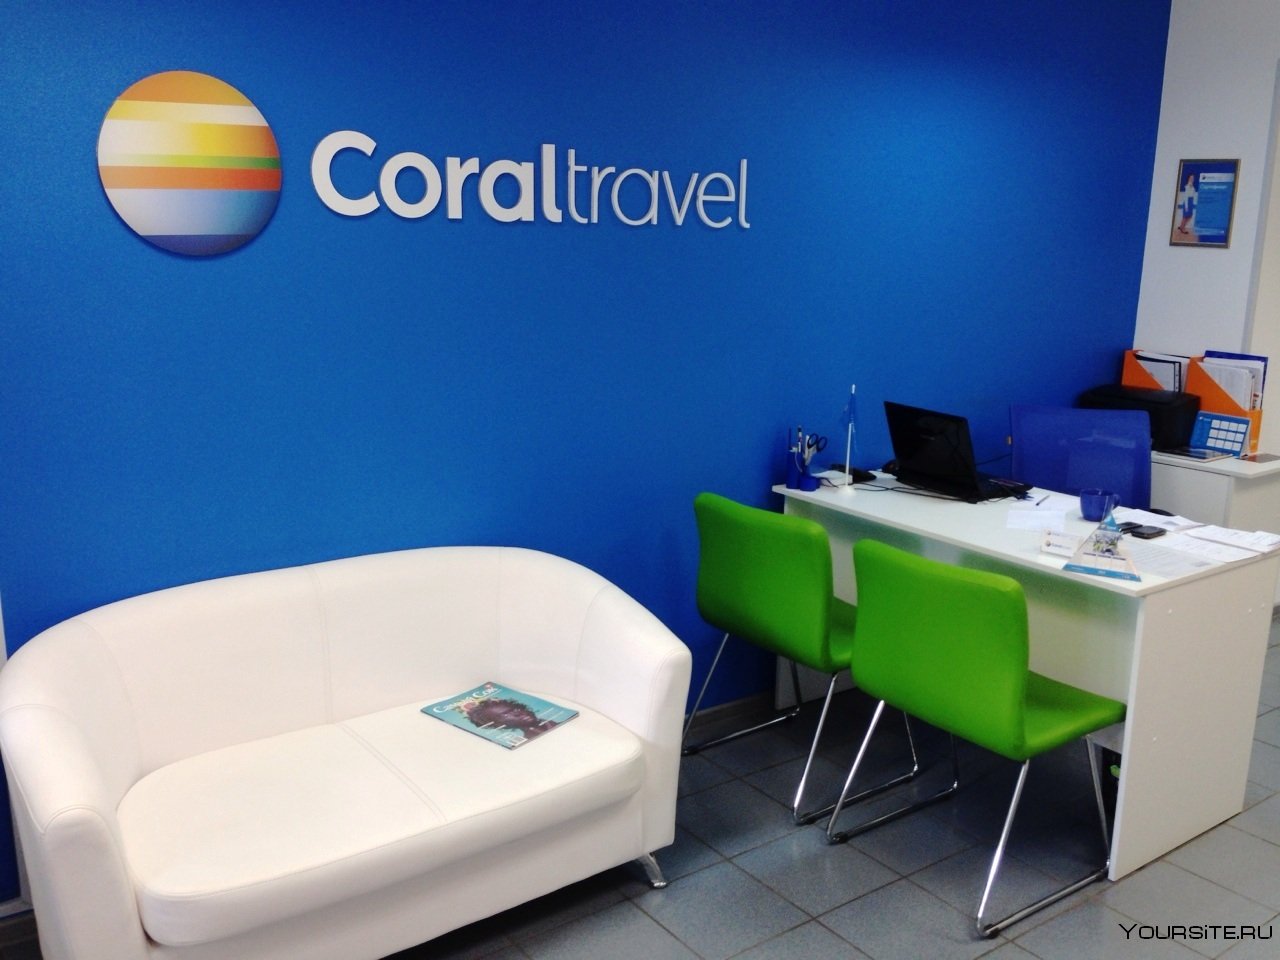 Coral адреса. Туристическое агентство Coral Travel. Офис Корал Тревел. Coral Travel офис. Coral Travel турагентство.